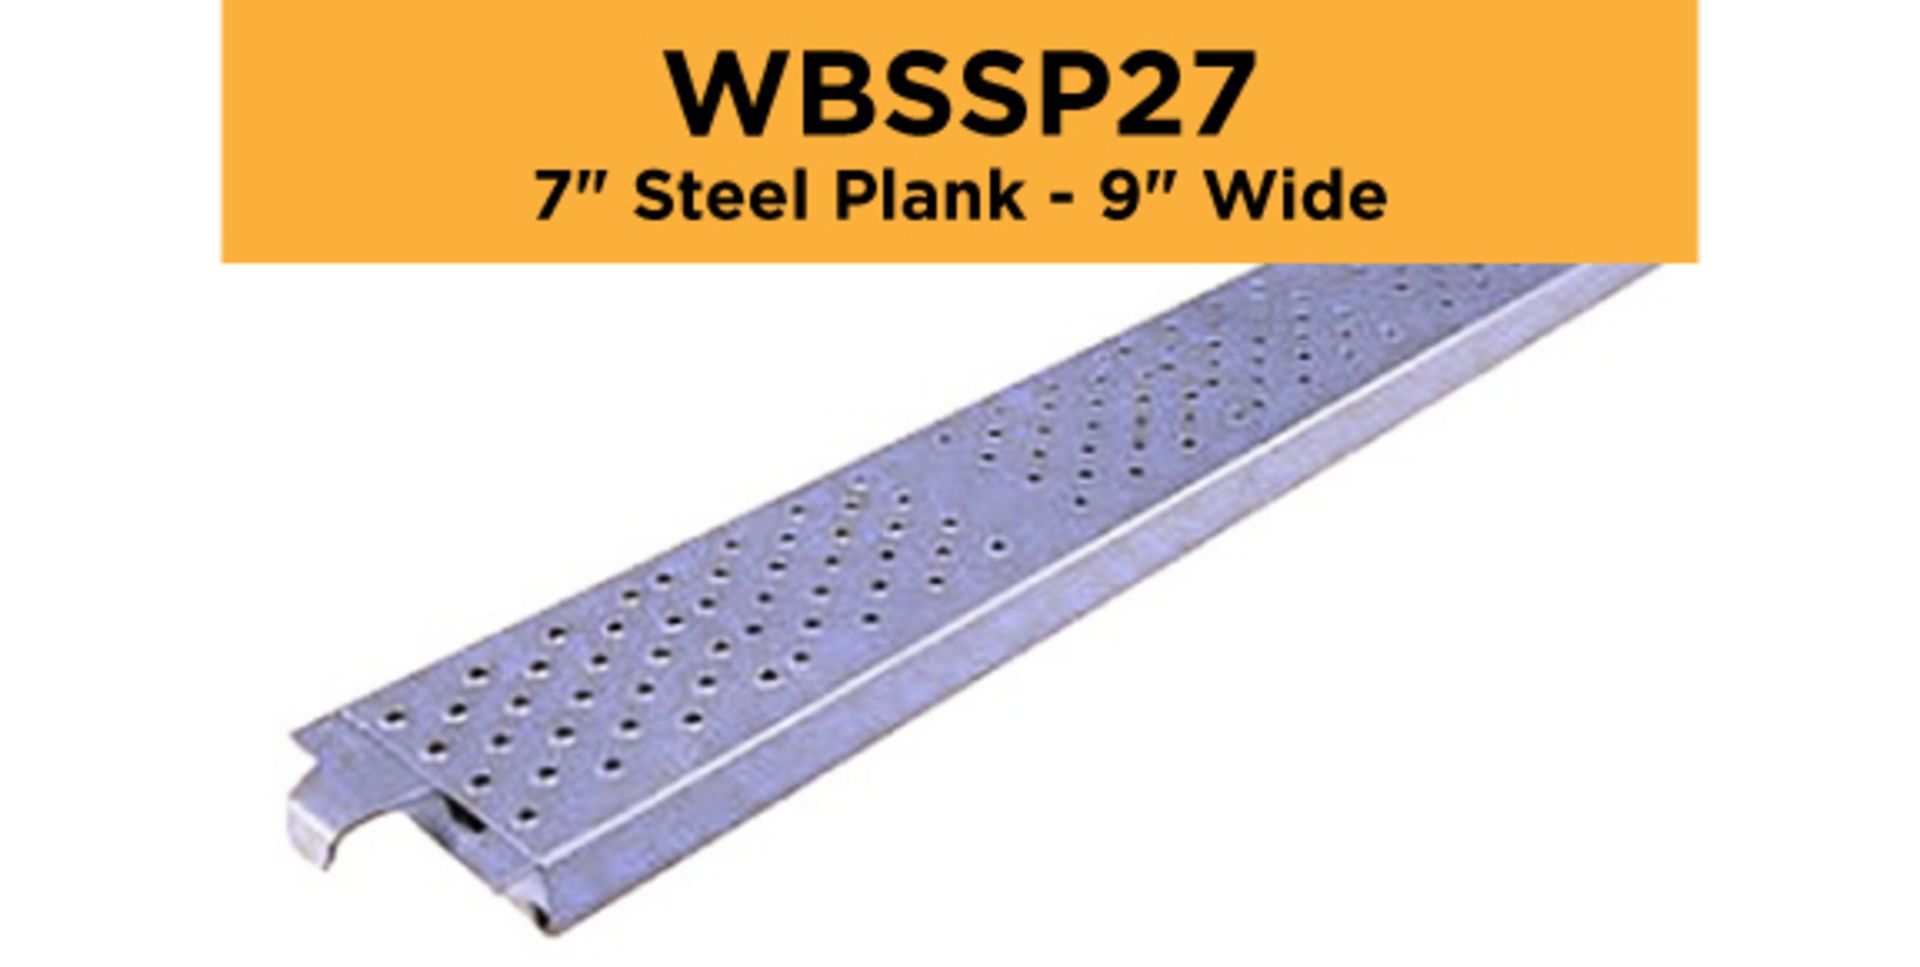 Lot of (256) 2' - 7" Steel Plank - 9" Wide - Bay Length 31" (0.79M); Type: WBSSP27 - (4) Racks Per